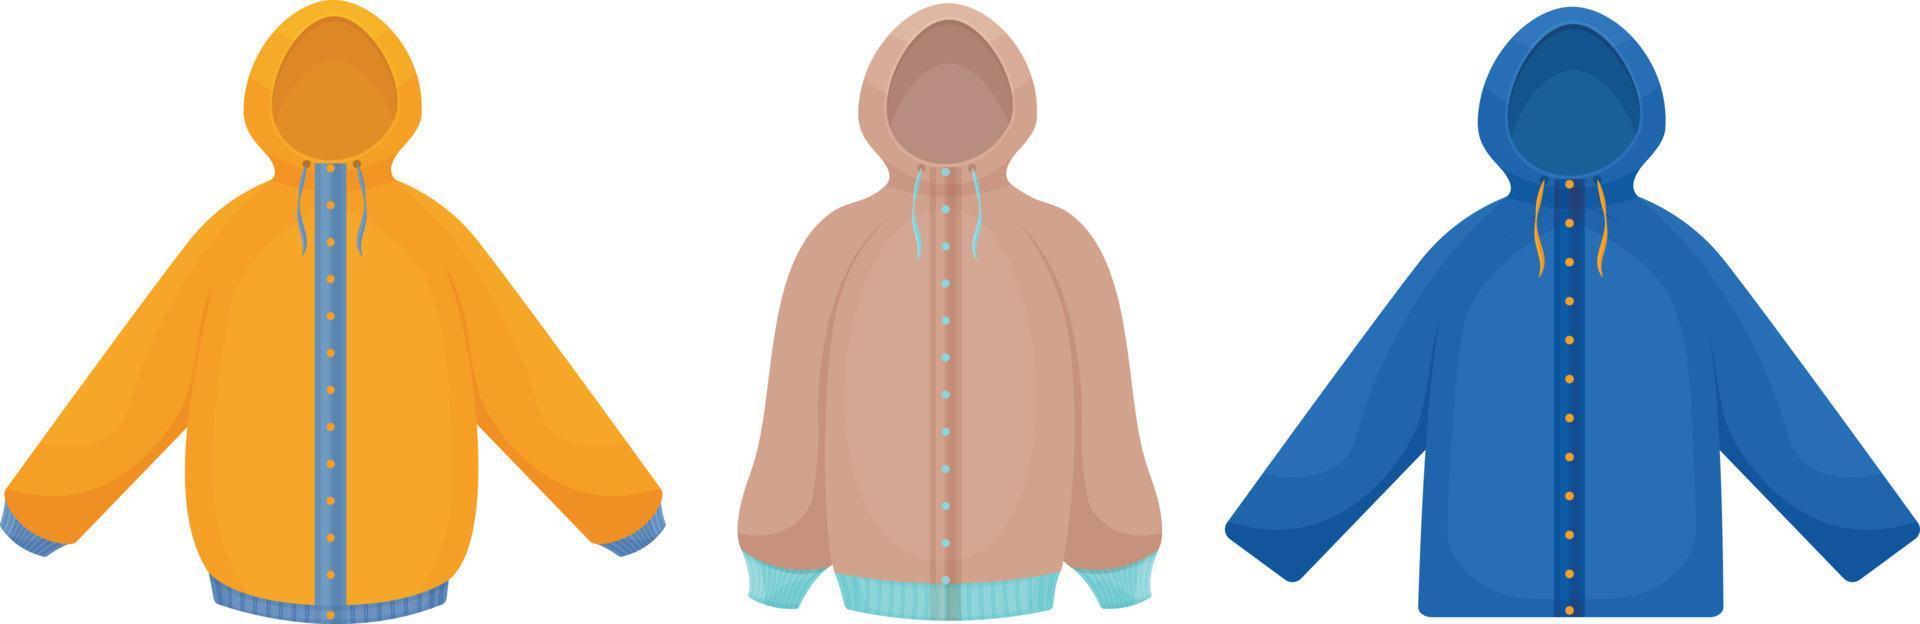 jaquetas para caminhadas de outono e inverno em diferentes cores e estilos. um conjunto de três jaquetas. agasalhos juvenis para caminhadas e esportes. ilustração vetorial vetor